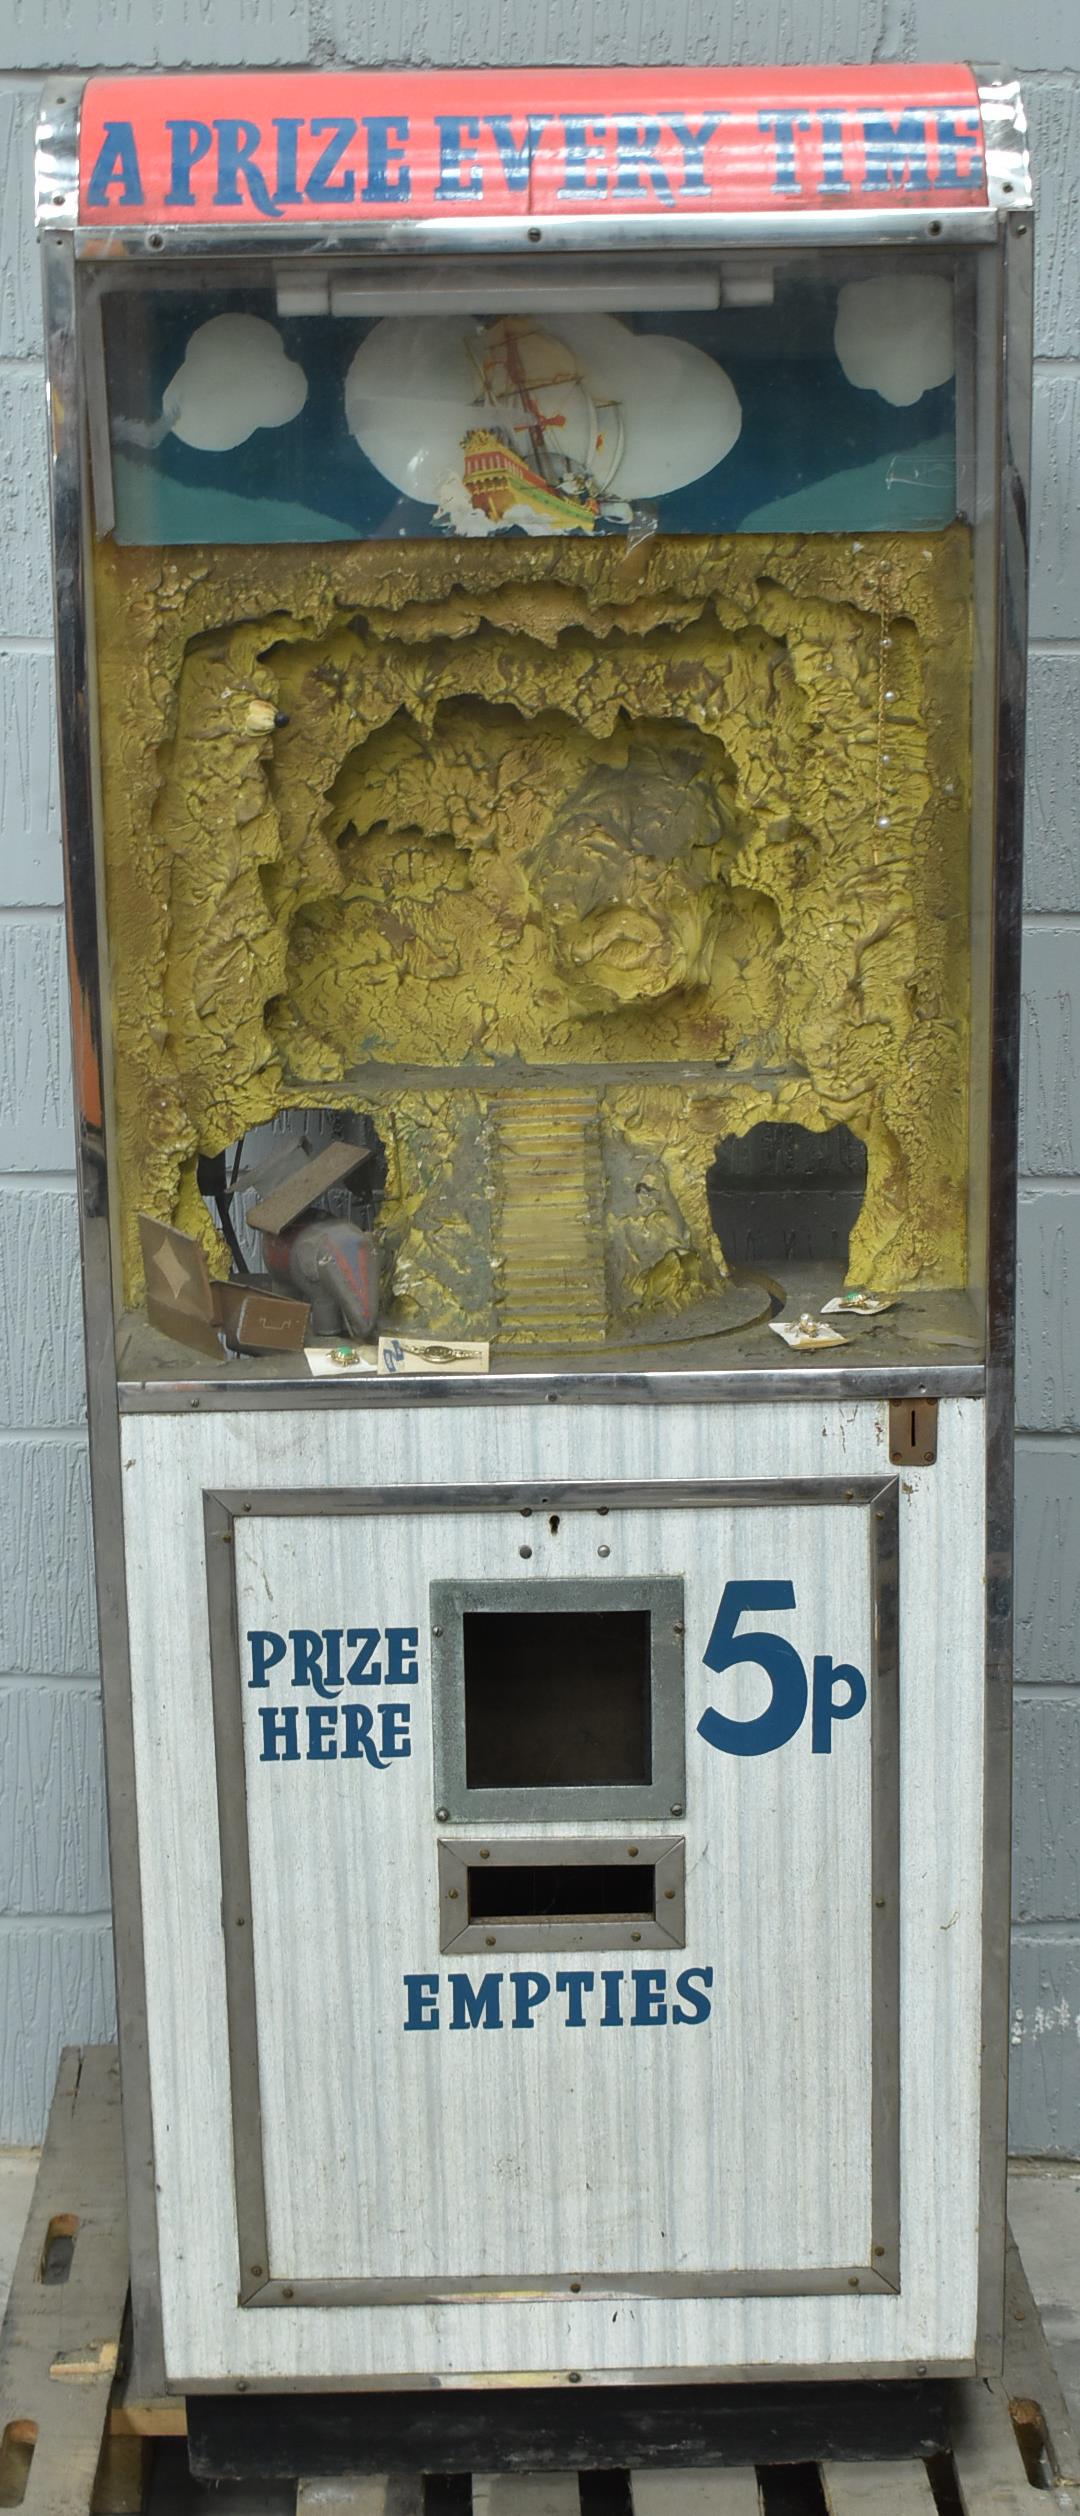 Treasure Cave slot machine.